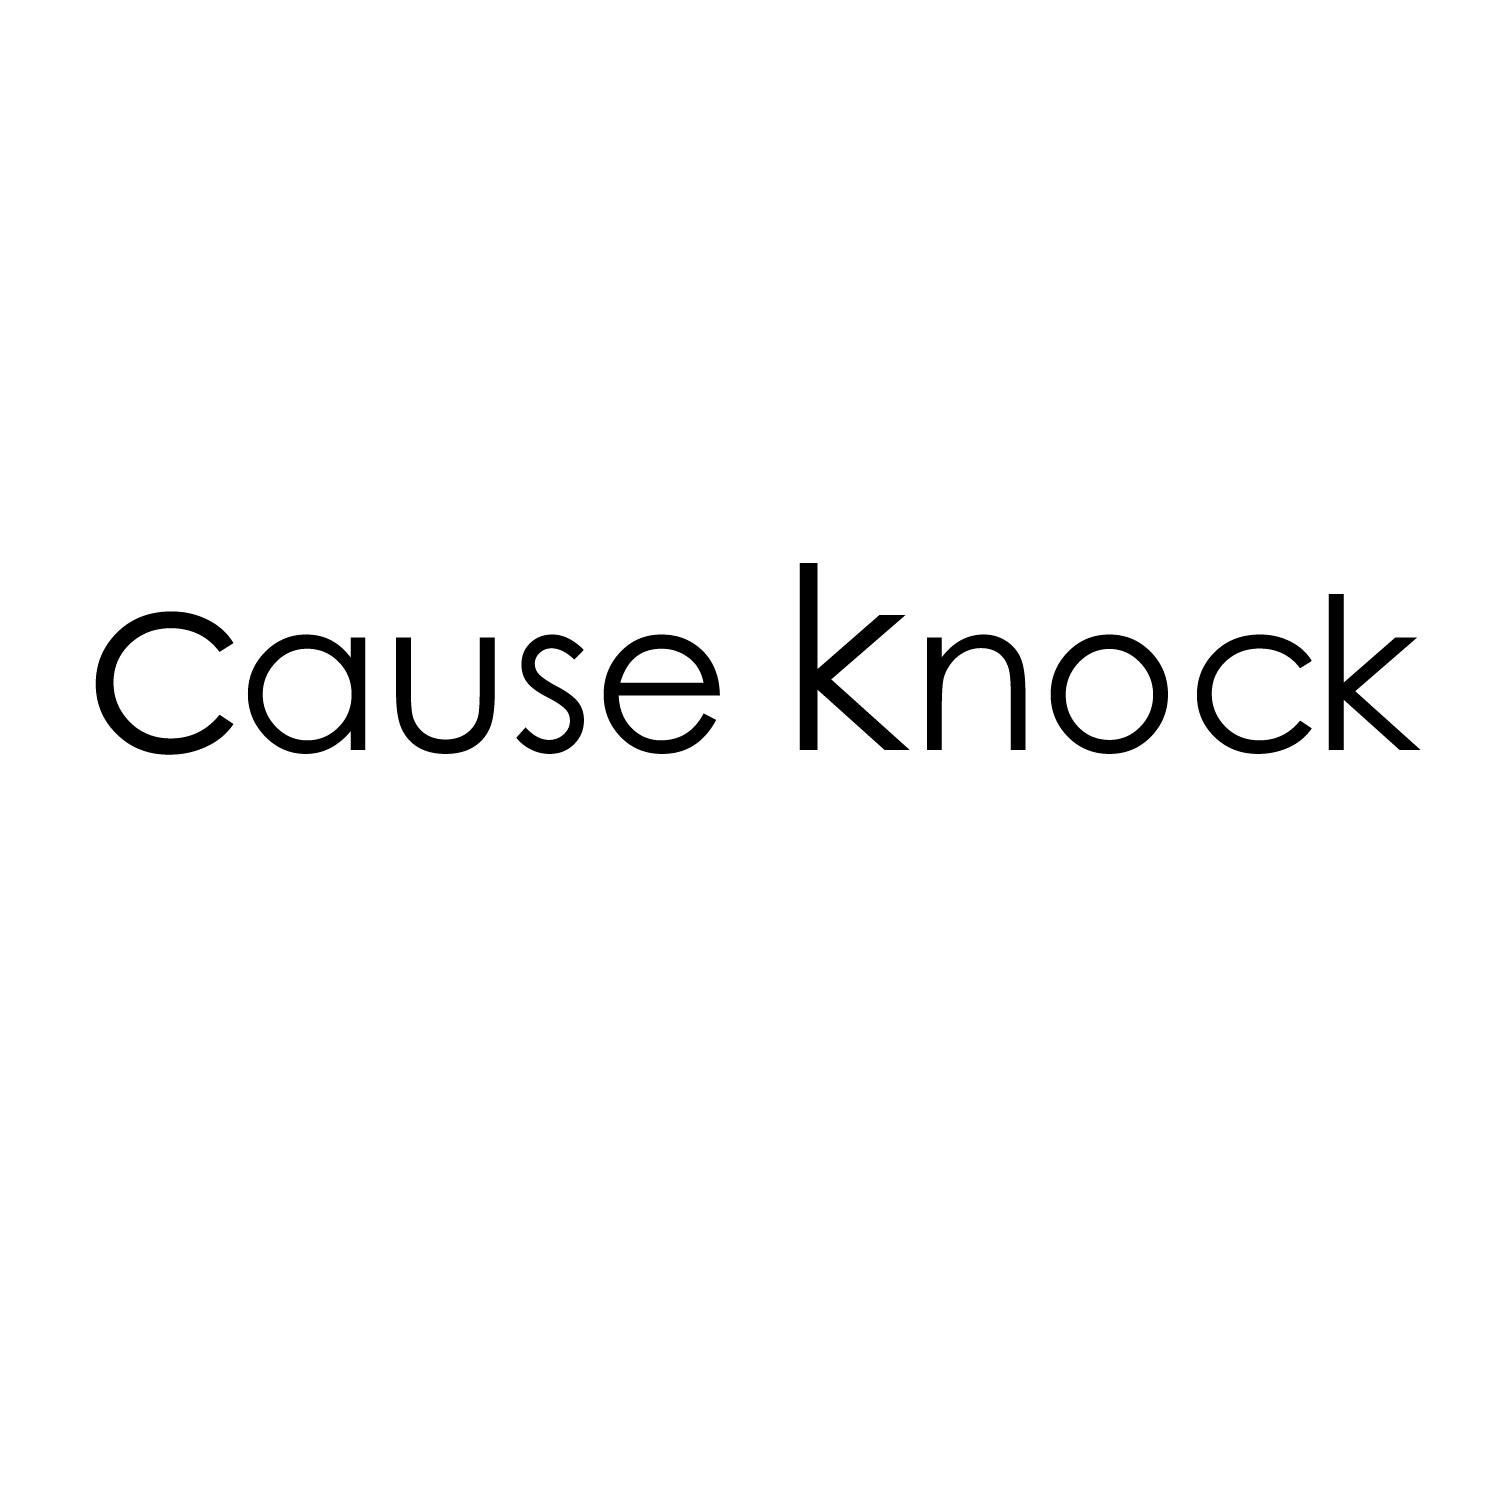 CAUSE KNOCK